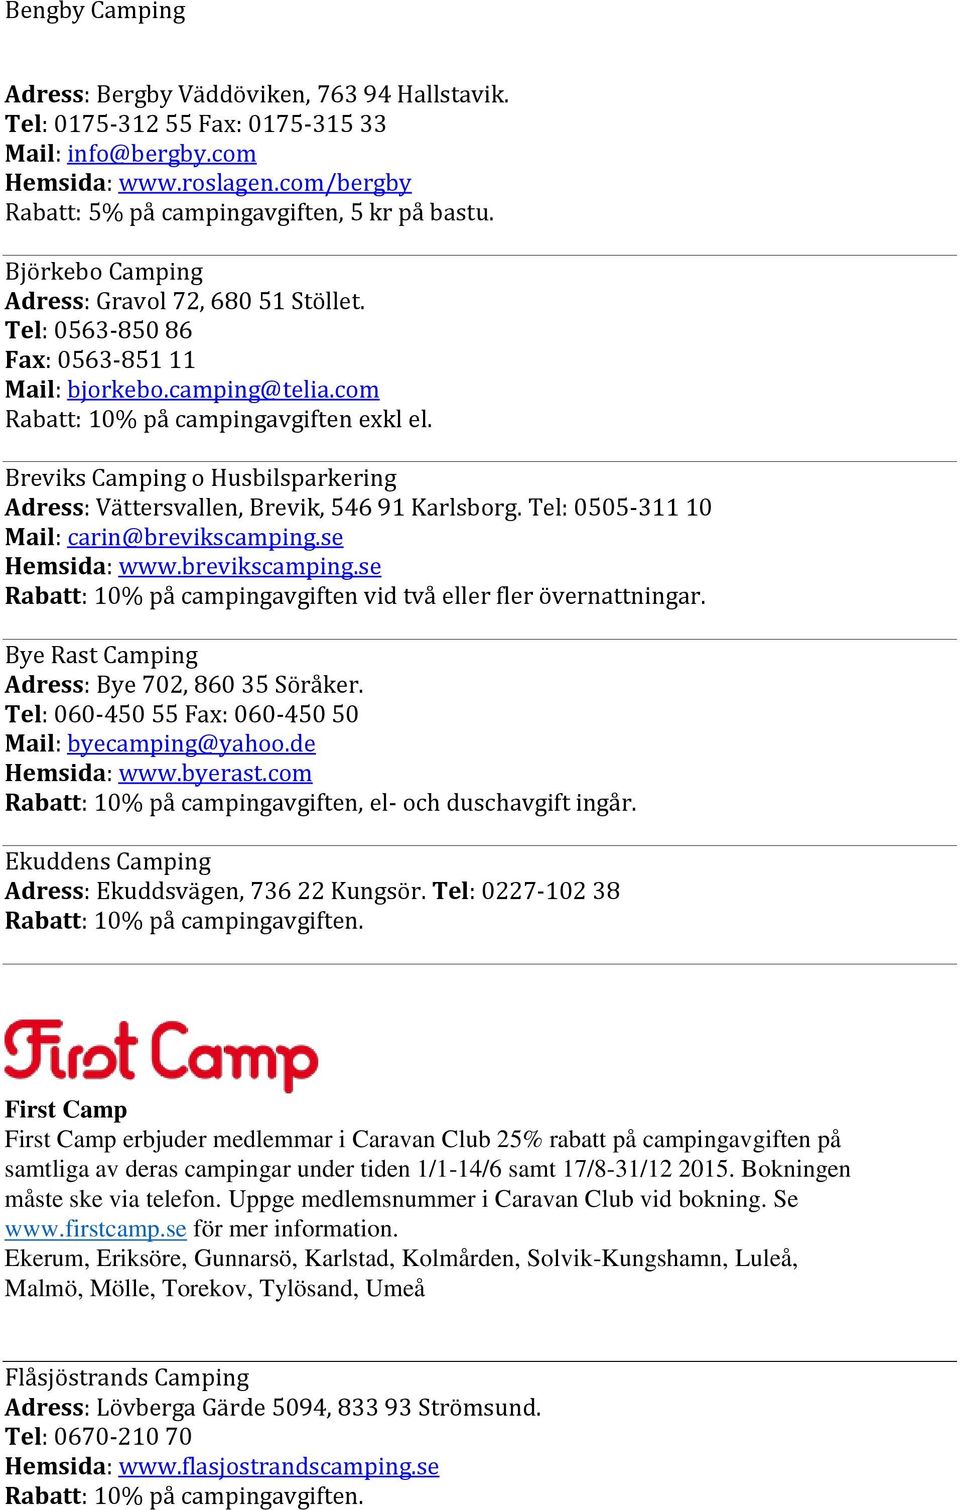 Breviks Camping o Husbilsparkering Adress: Vättersvallen, Brevik, 546 91 Karlsborg. Tel: 0505-311 10 Mail: carin@brevikscamping.se Hemsida: www.brevikscamping.se Rabatt: 10% på campingavgiften vid två eller fler övernattningar.